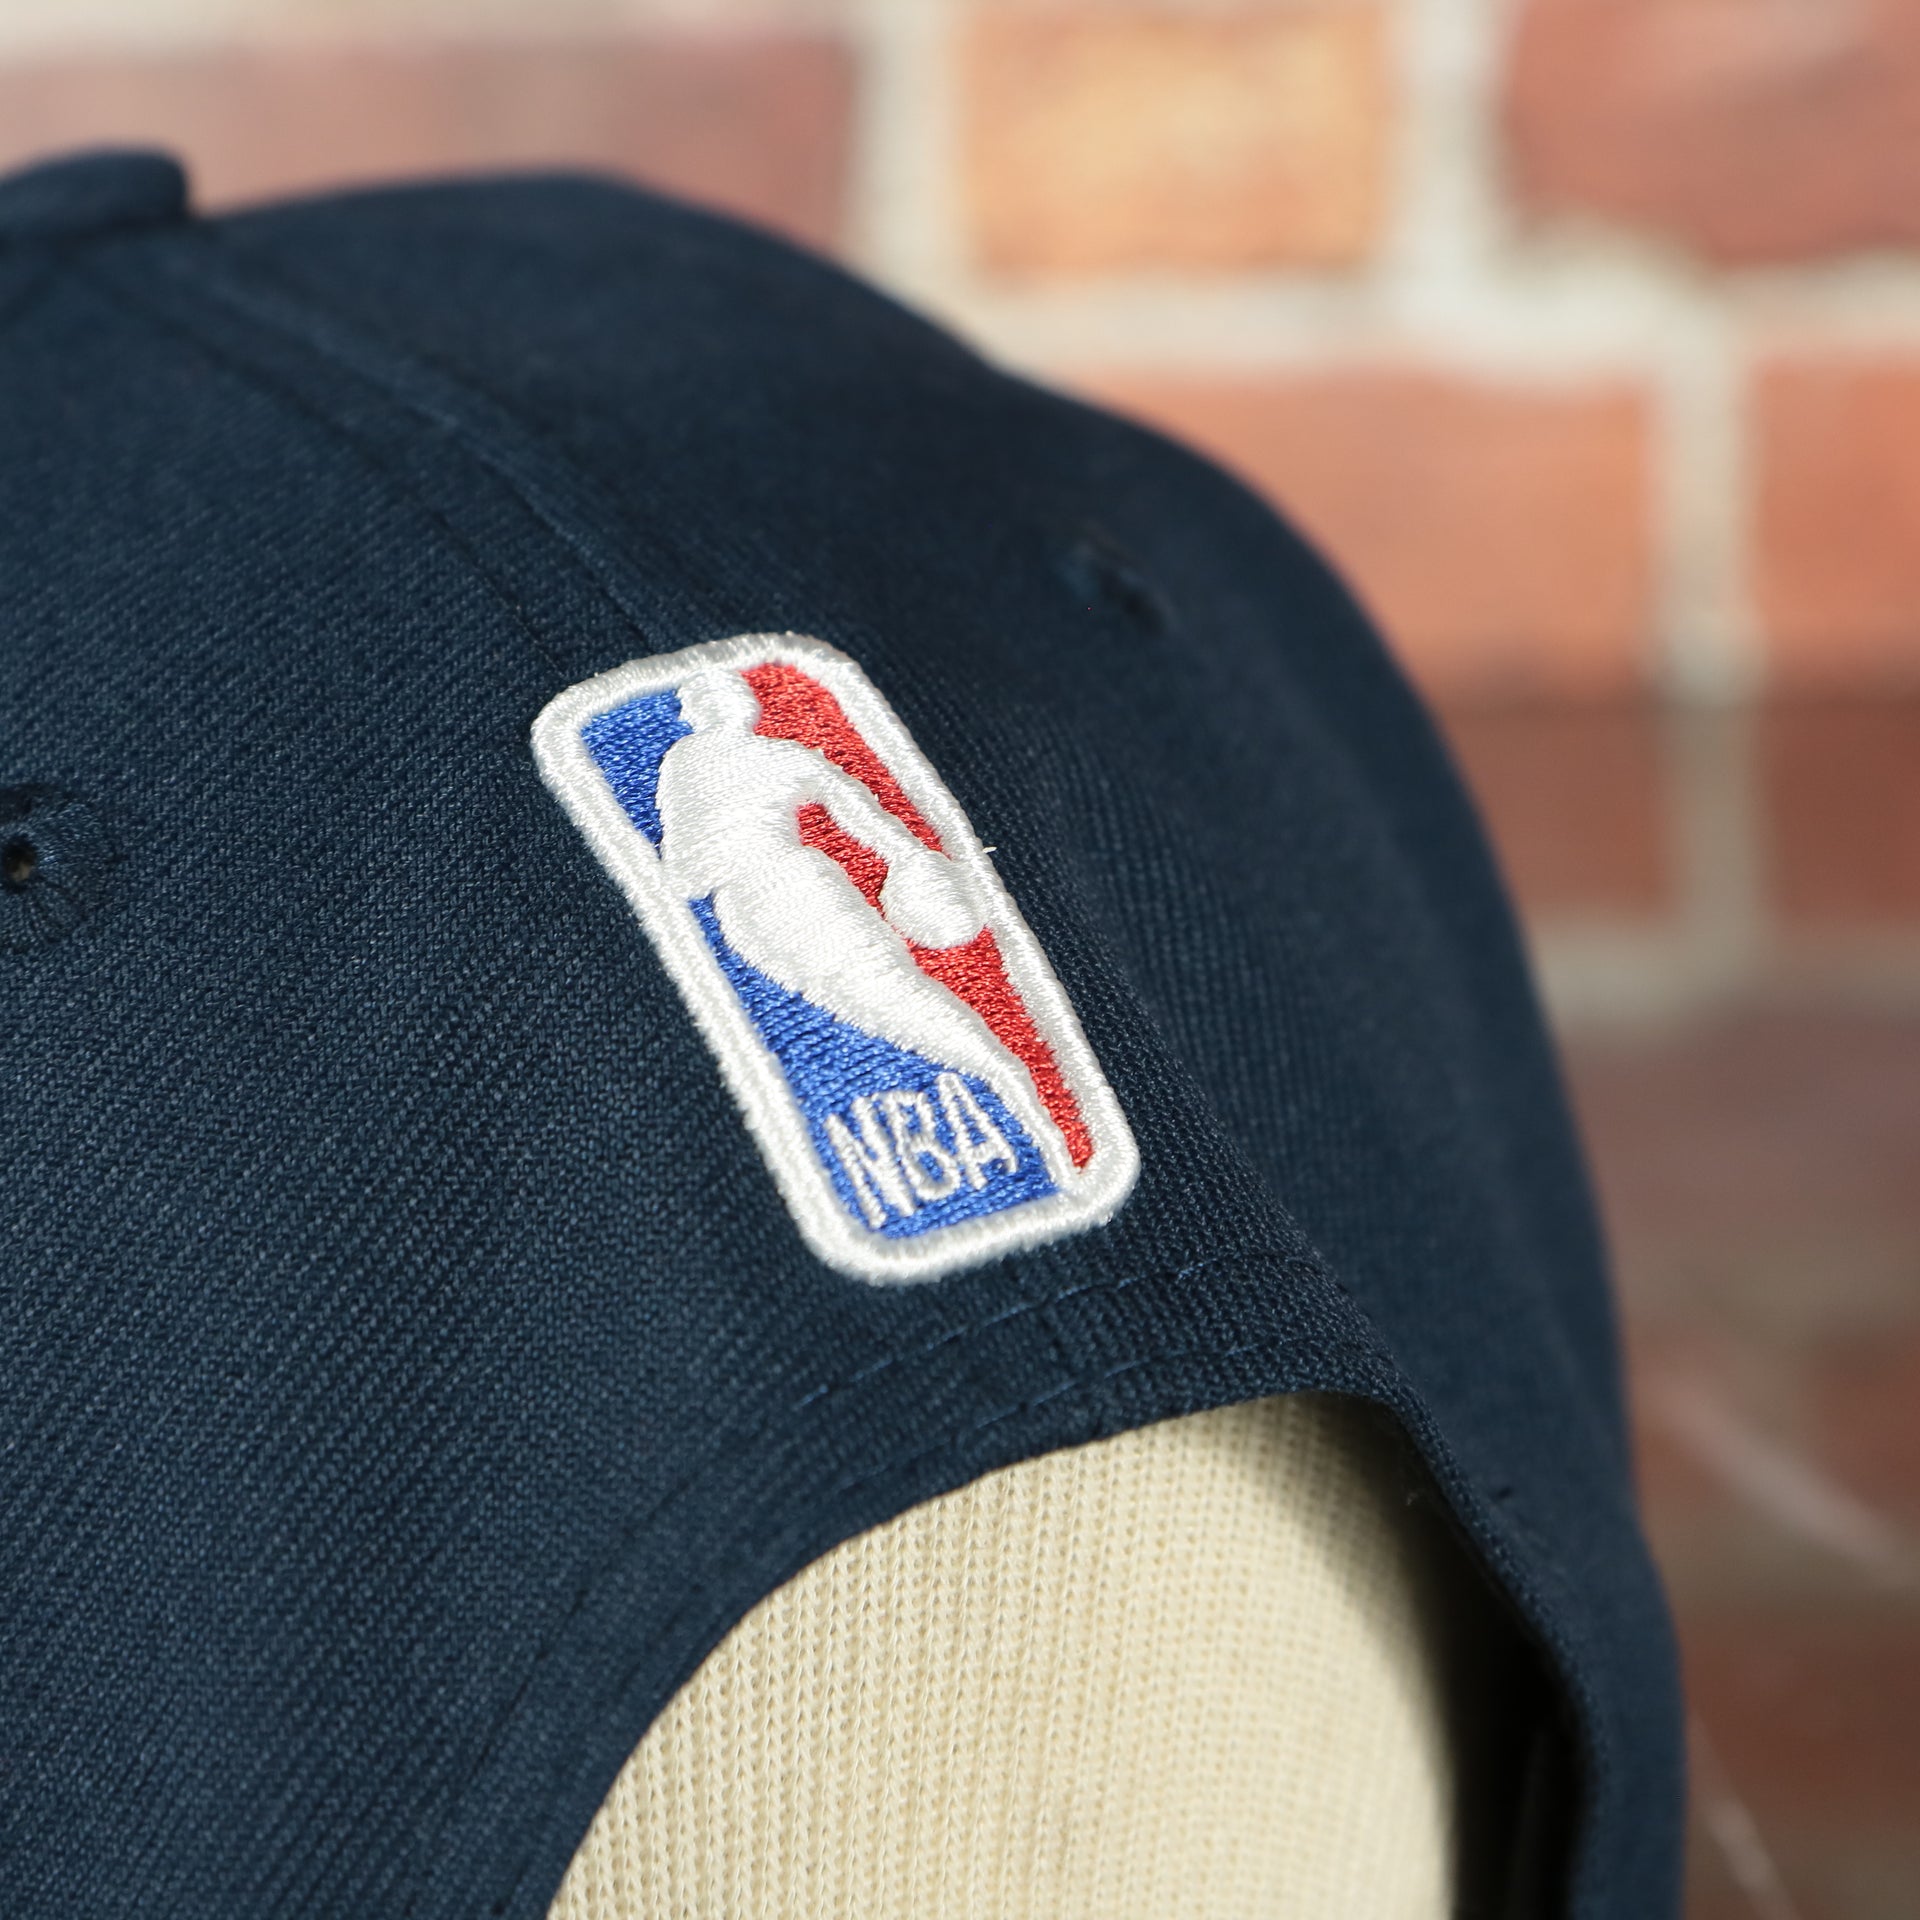 nba logo on the Pelicans 2020 NBA Draft Snapback Hat | New Orleans Pelicans NBA 2020 Draft Snap Hat